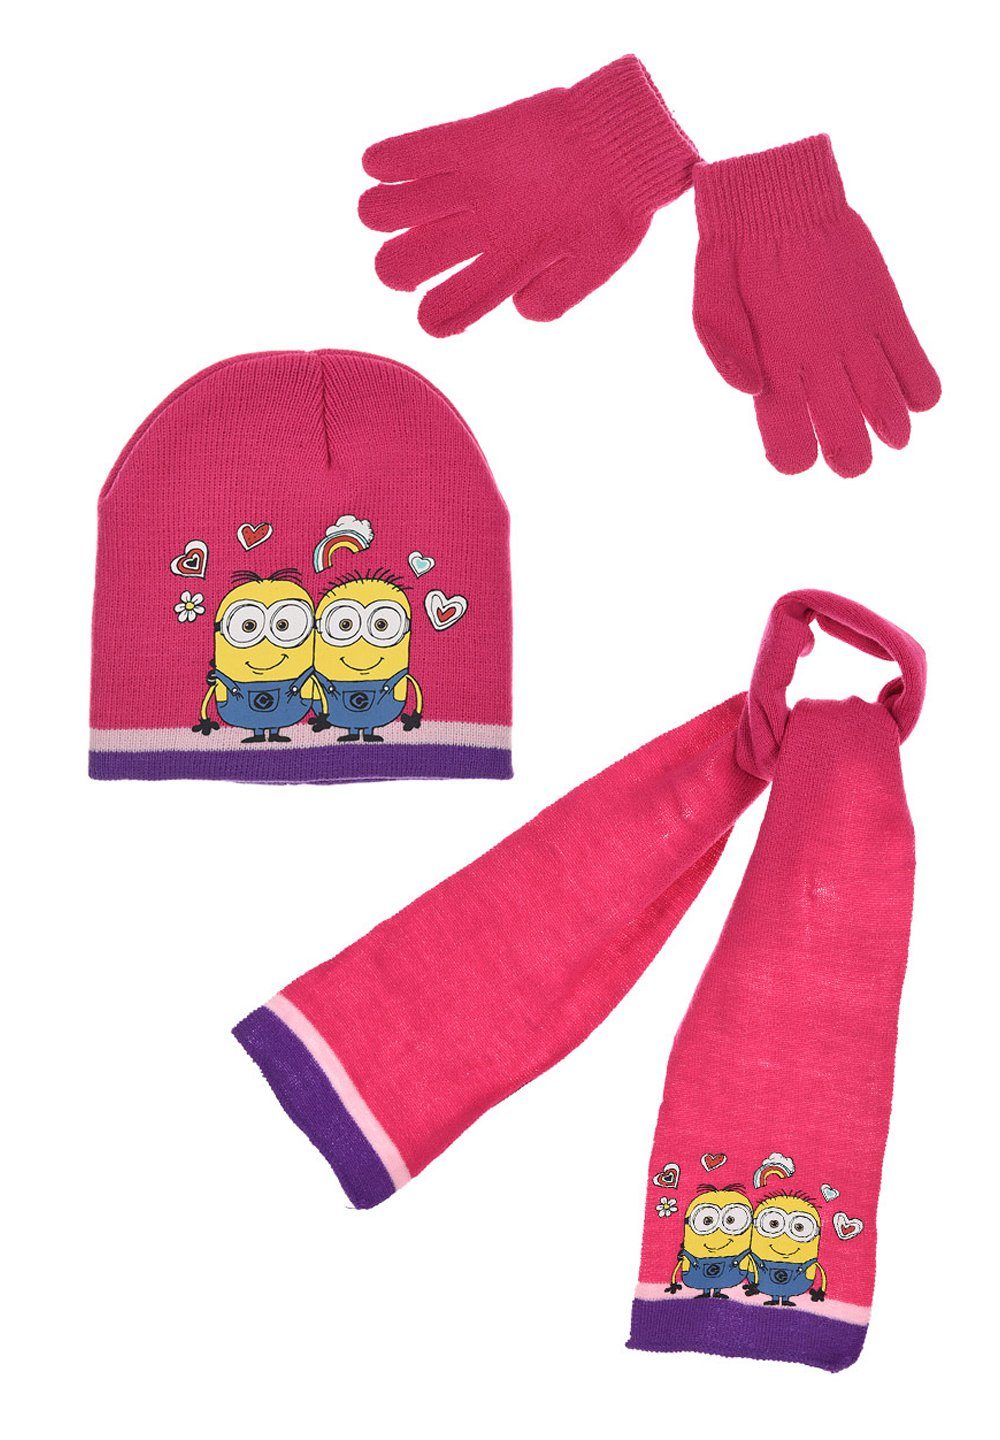 Minions Beanie »Kinder Mädchen Winter-Set Mütze Schal Handschuhe« (SET)  online kaufen | OTTO